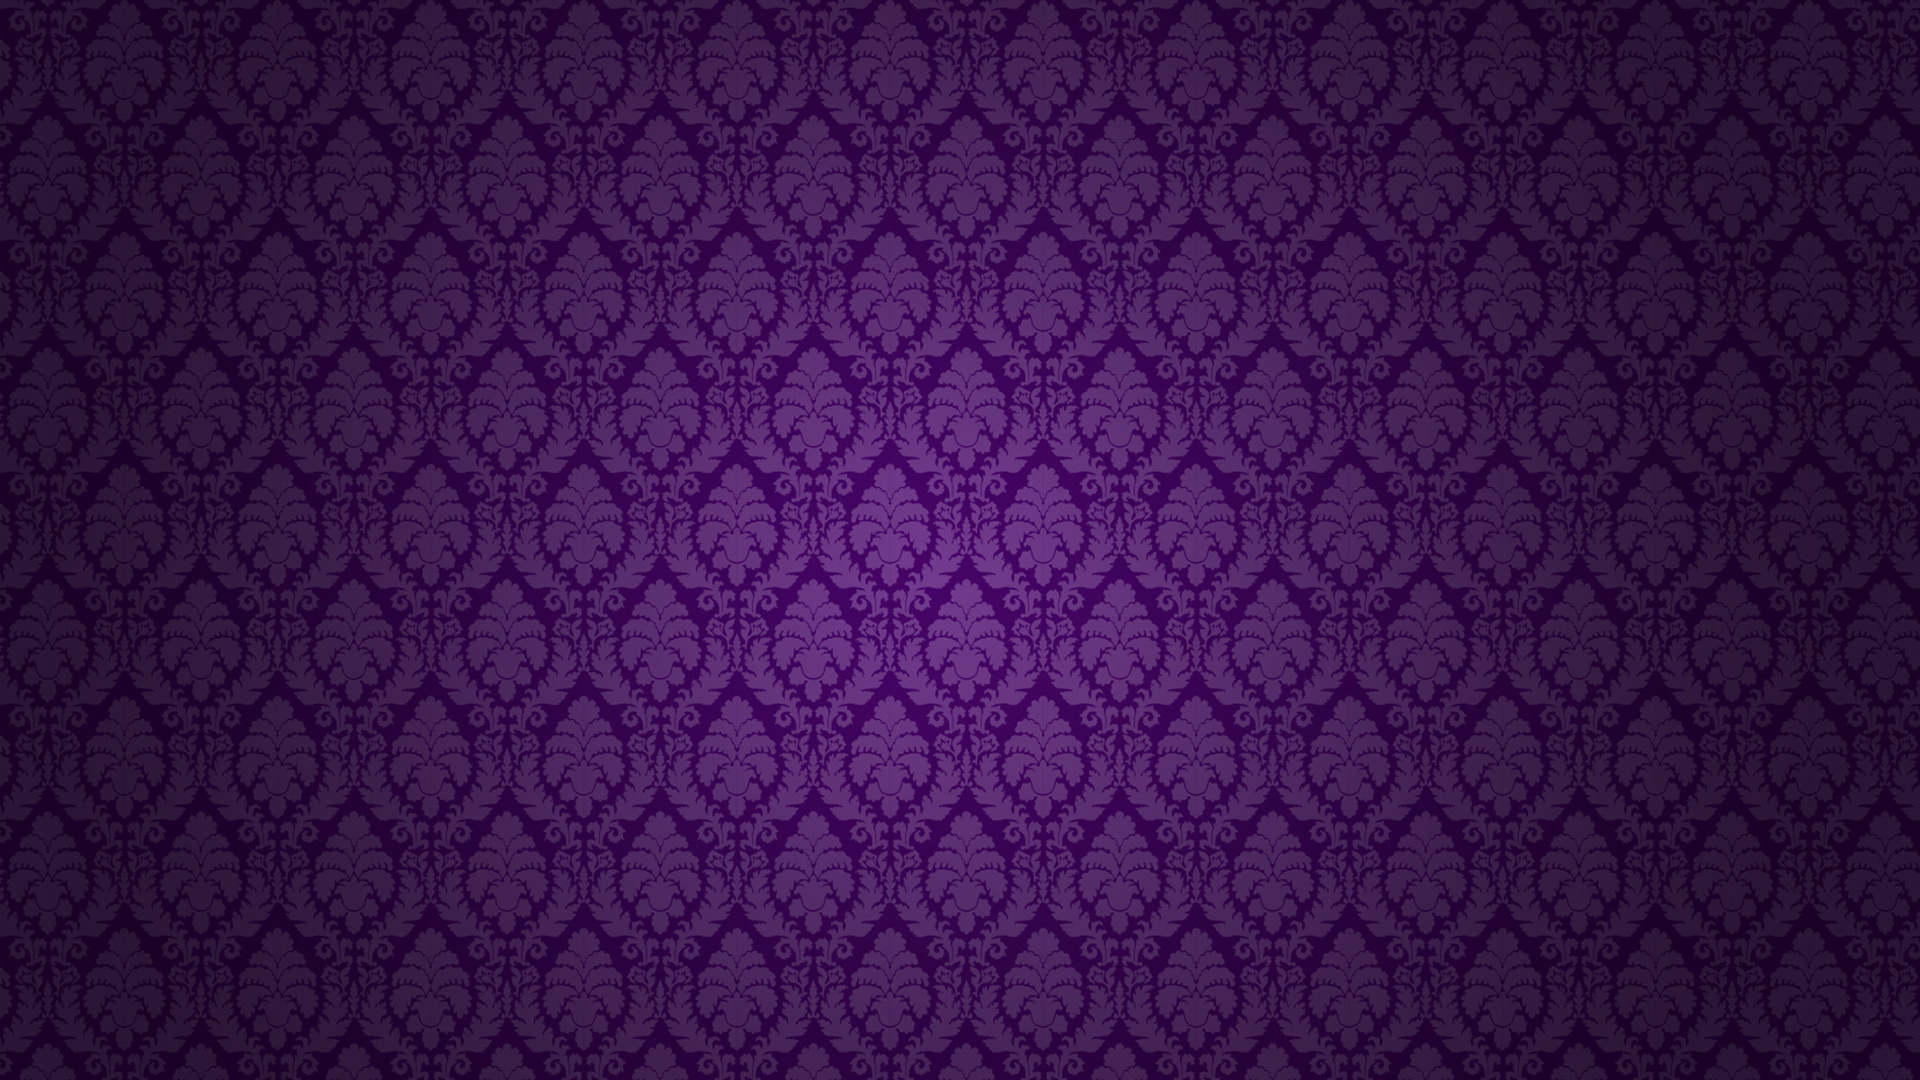 Desktop Wallpaper Purple Image Amp Pictures Becuo